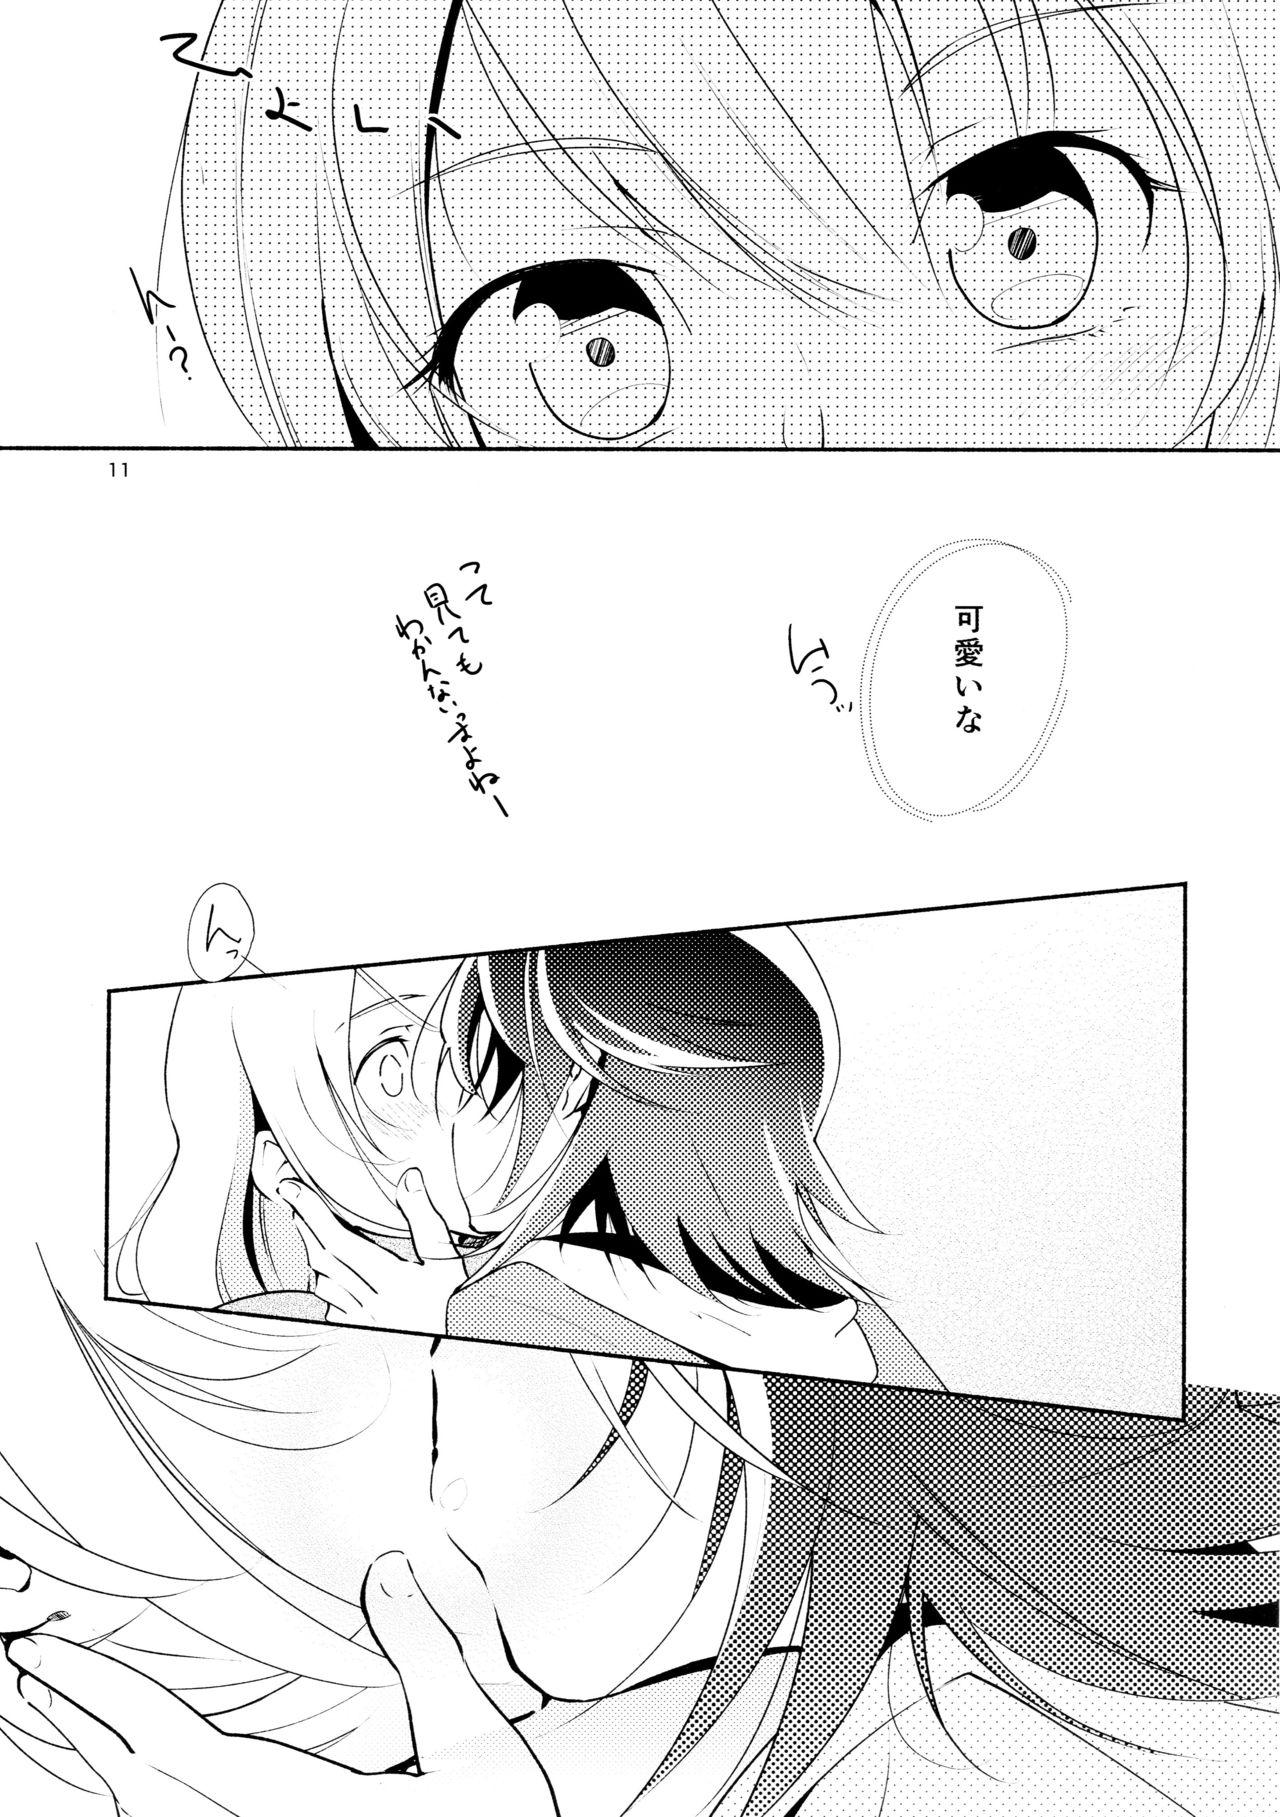 Ass To Mouth Harugasumi - Kimi to Tomo ni Ayumu Michi 8teen - Page 11